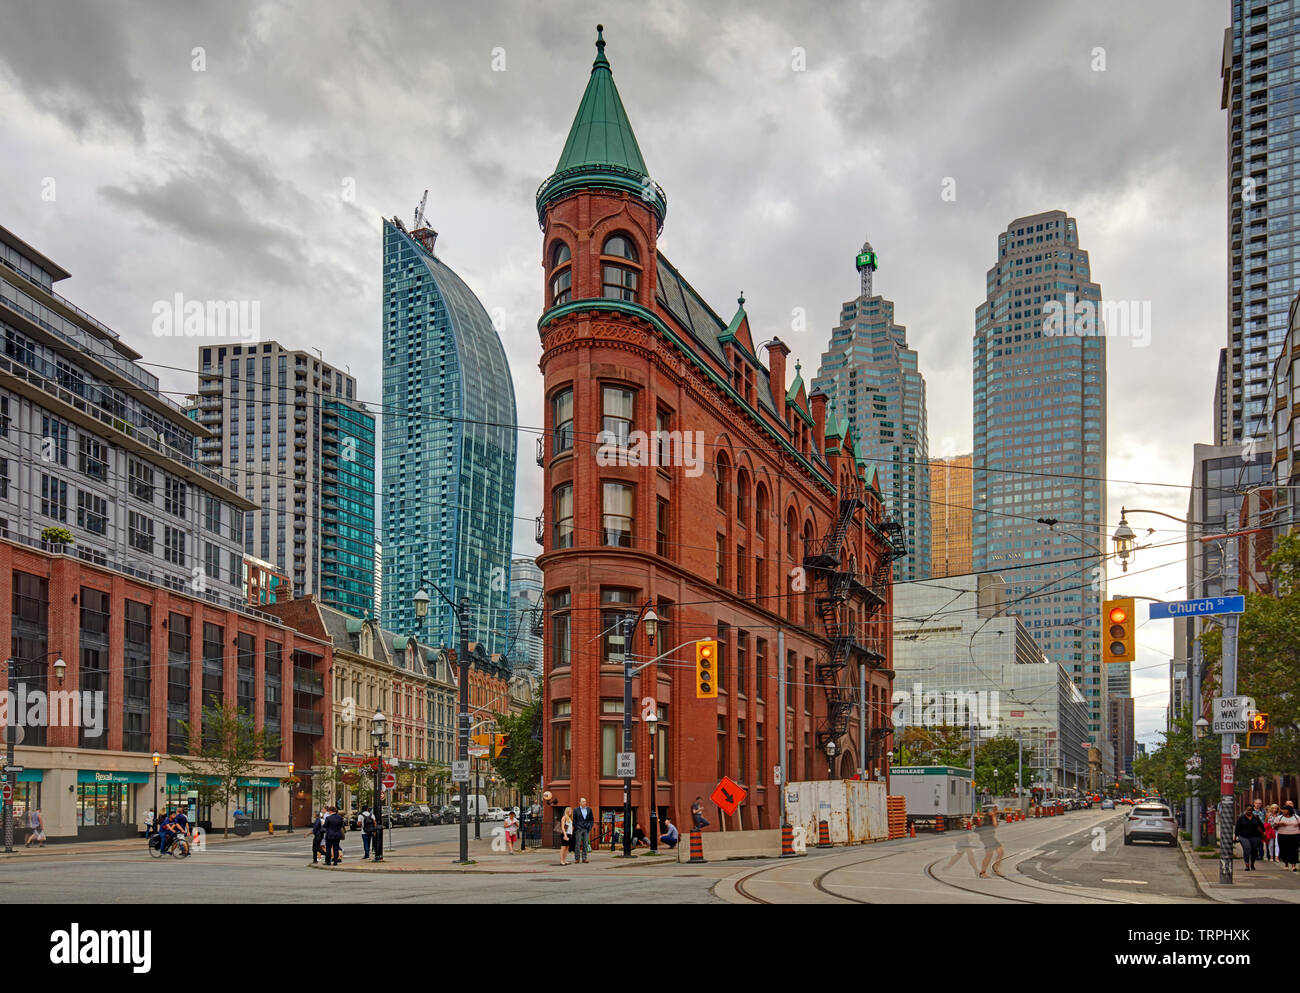 Immeuble Gooderham, également connu sous le nom de Flatiron Building, à Toronto, Canada Banque D'Images